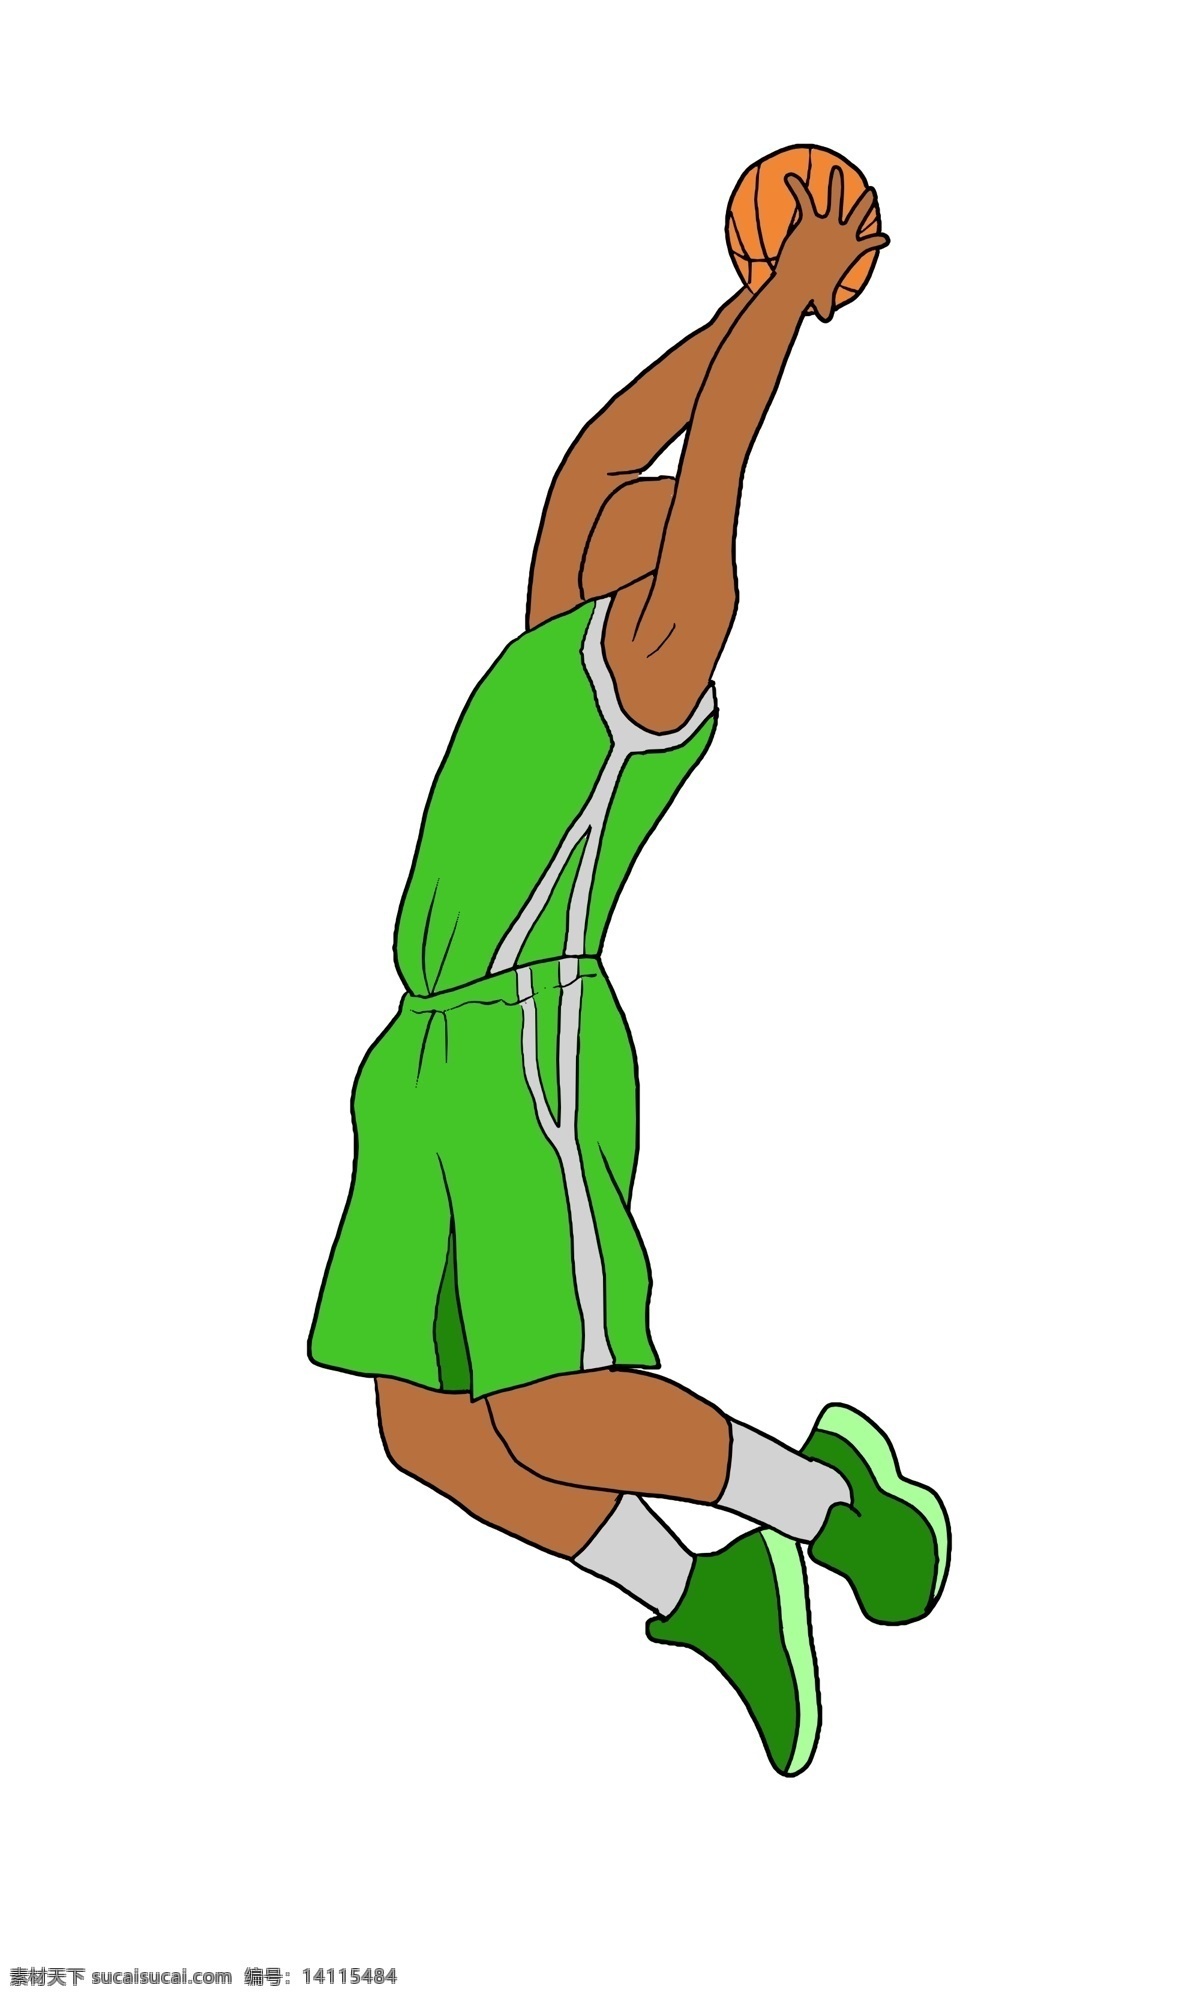 篮球 运动 投球 插画 投球的男孩 健身插画 云朵插画 篮球插画 中国篮球 卡通插画 跳跃的男孩